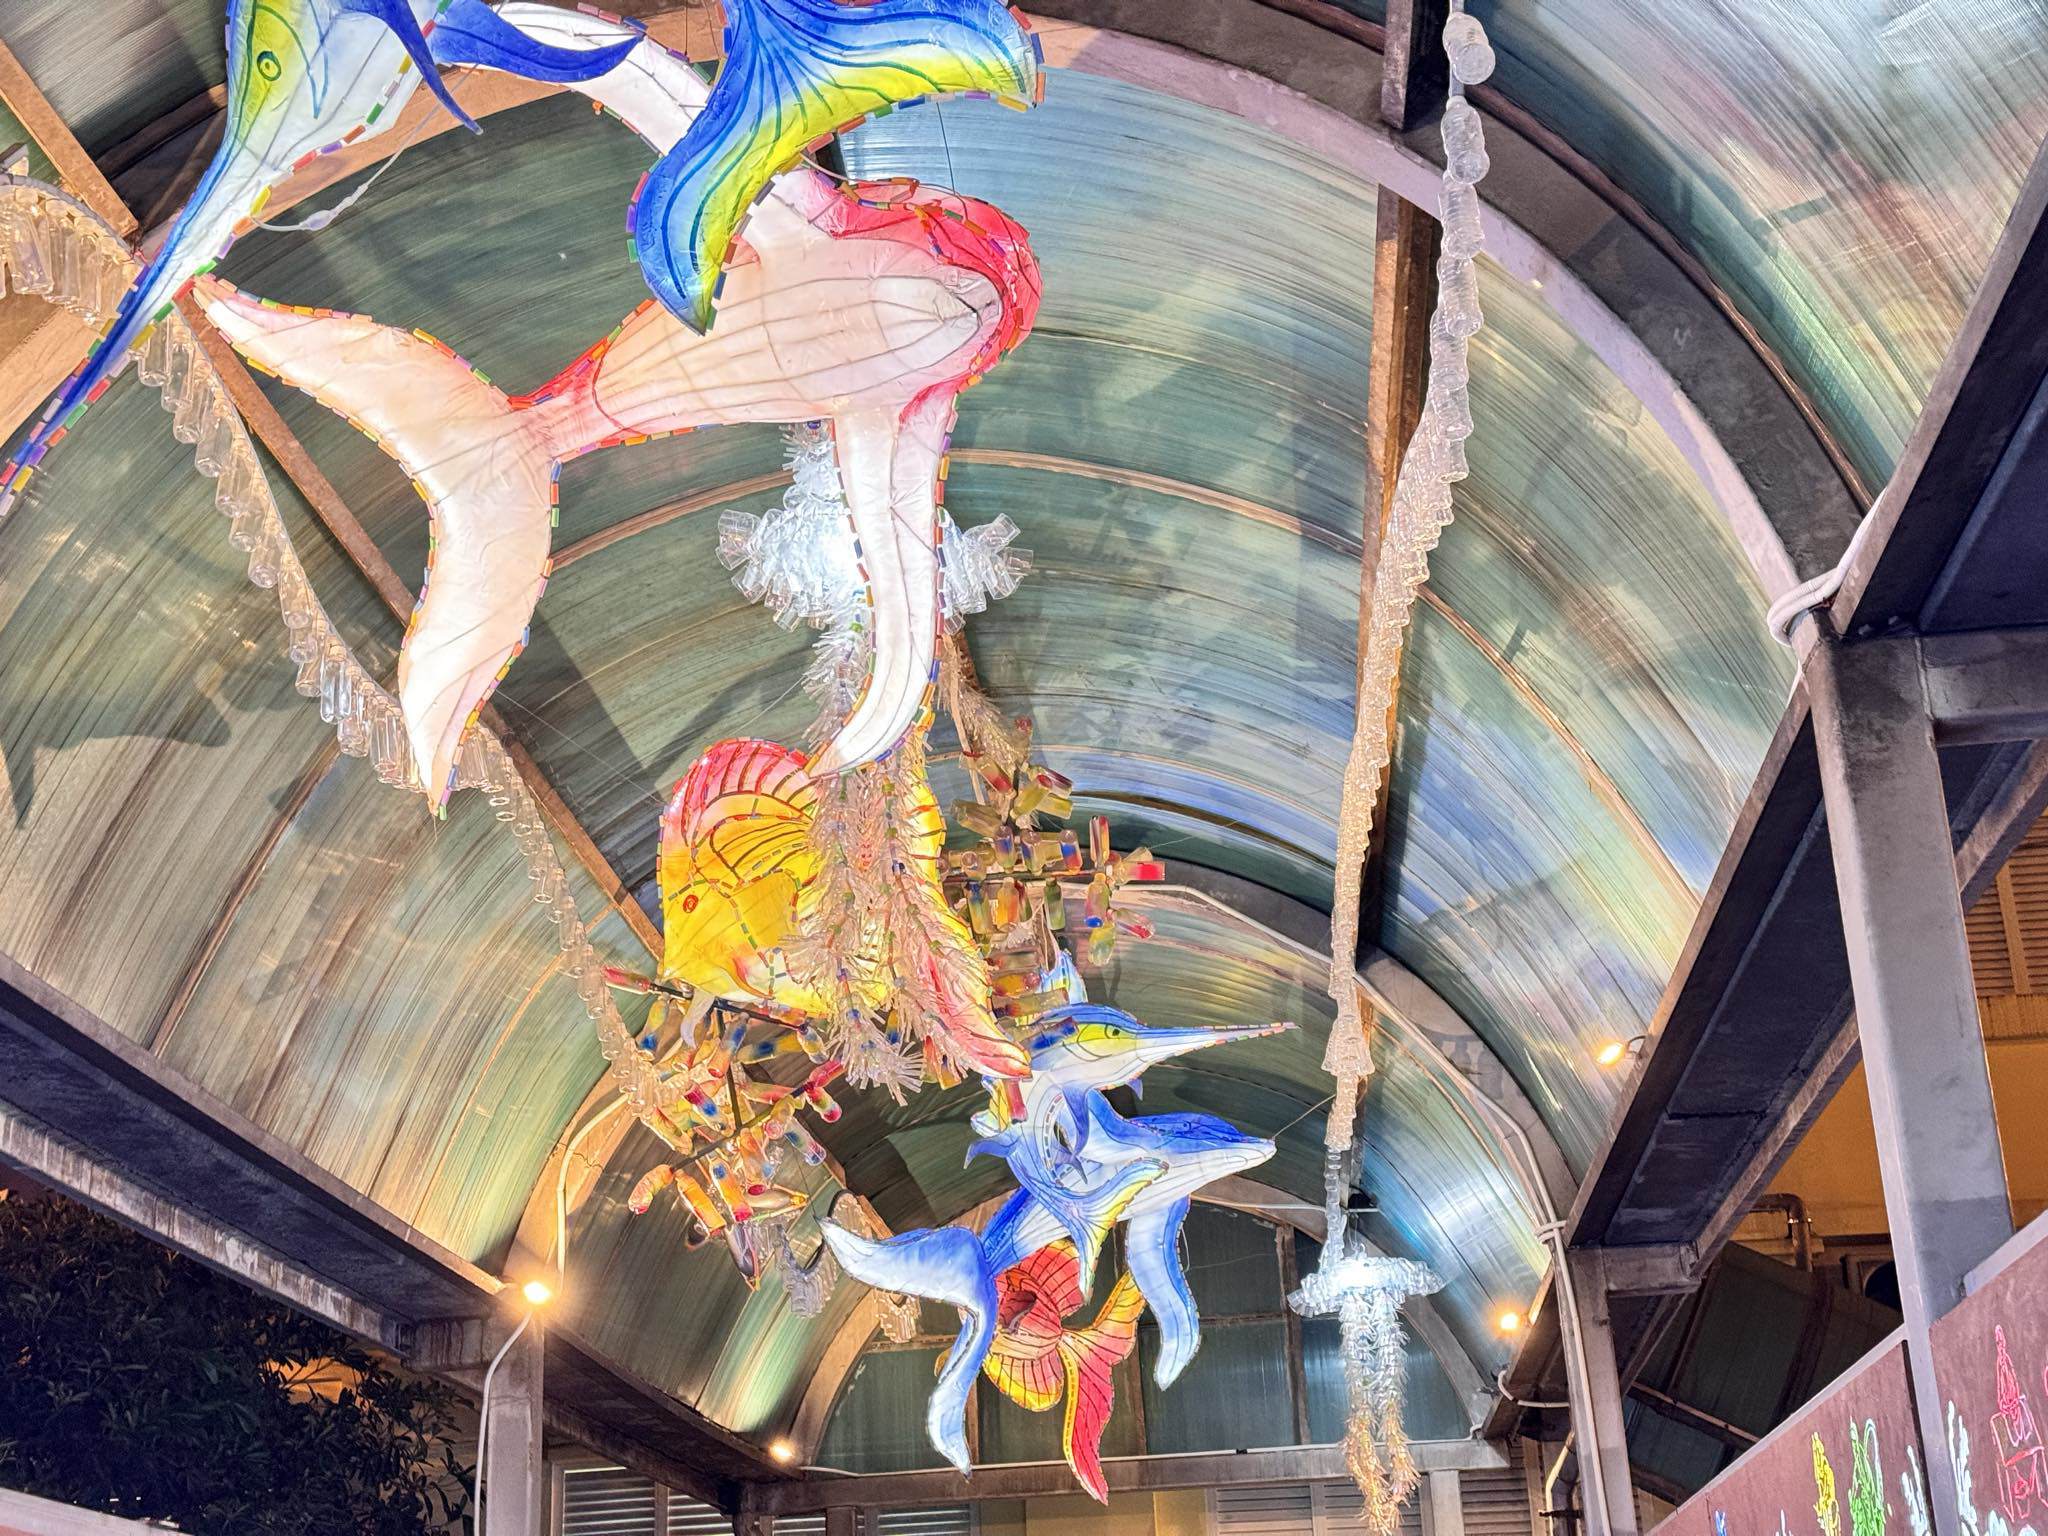 Với chủ đề Nước, hình tượng các loài cá, mực, sứa... trang trí trên mái cầu được làm từ chai nhựa tái chế do học sinh các trường tiểu học trên địa bàn quận thu gom. Tận dụng ánh sáng từ đèn cao áp chiếu hắt xuống tấm che của cây cầu, những tác phẩm hiện lên như một 